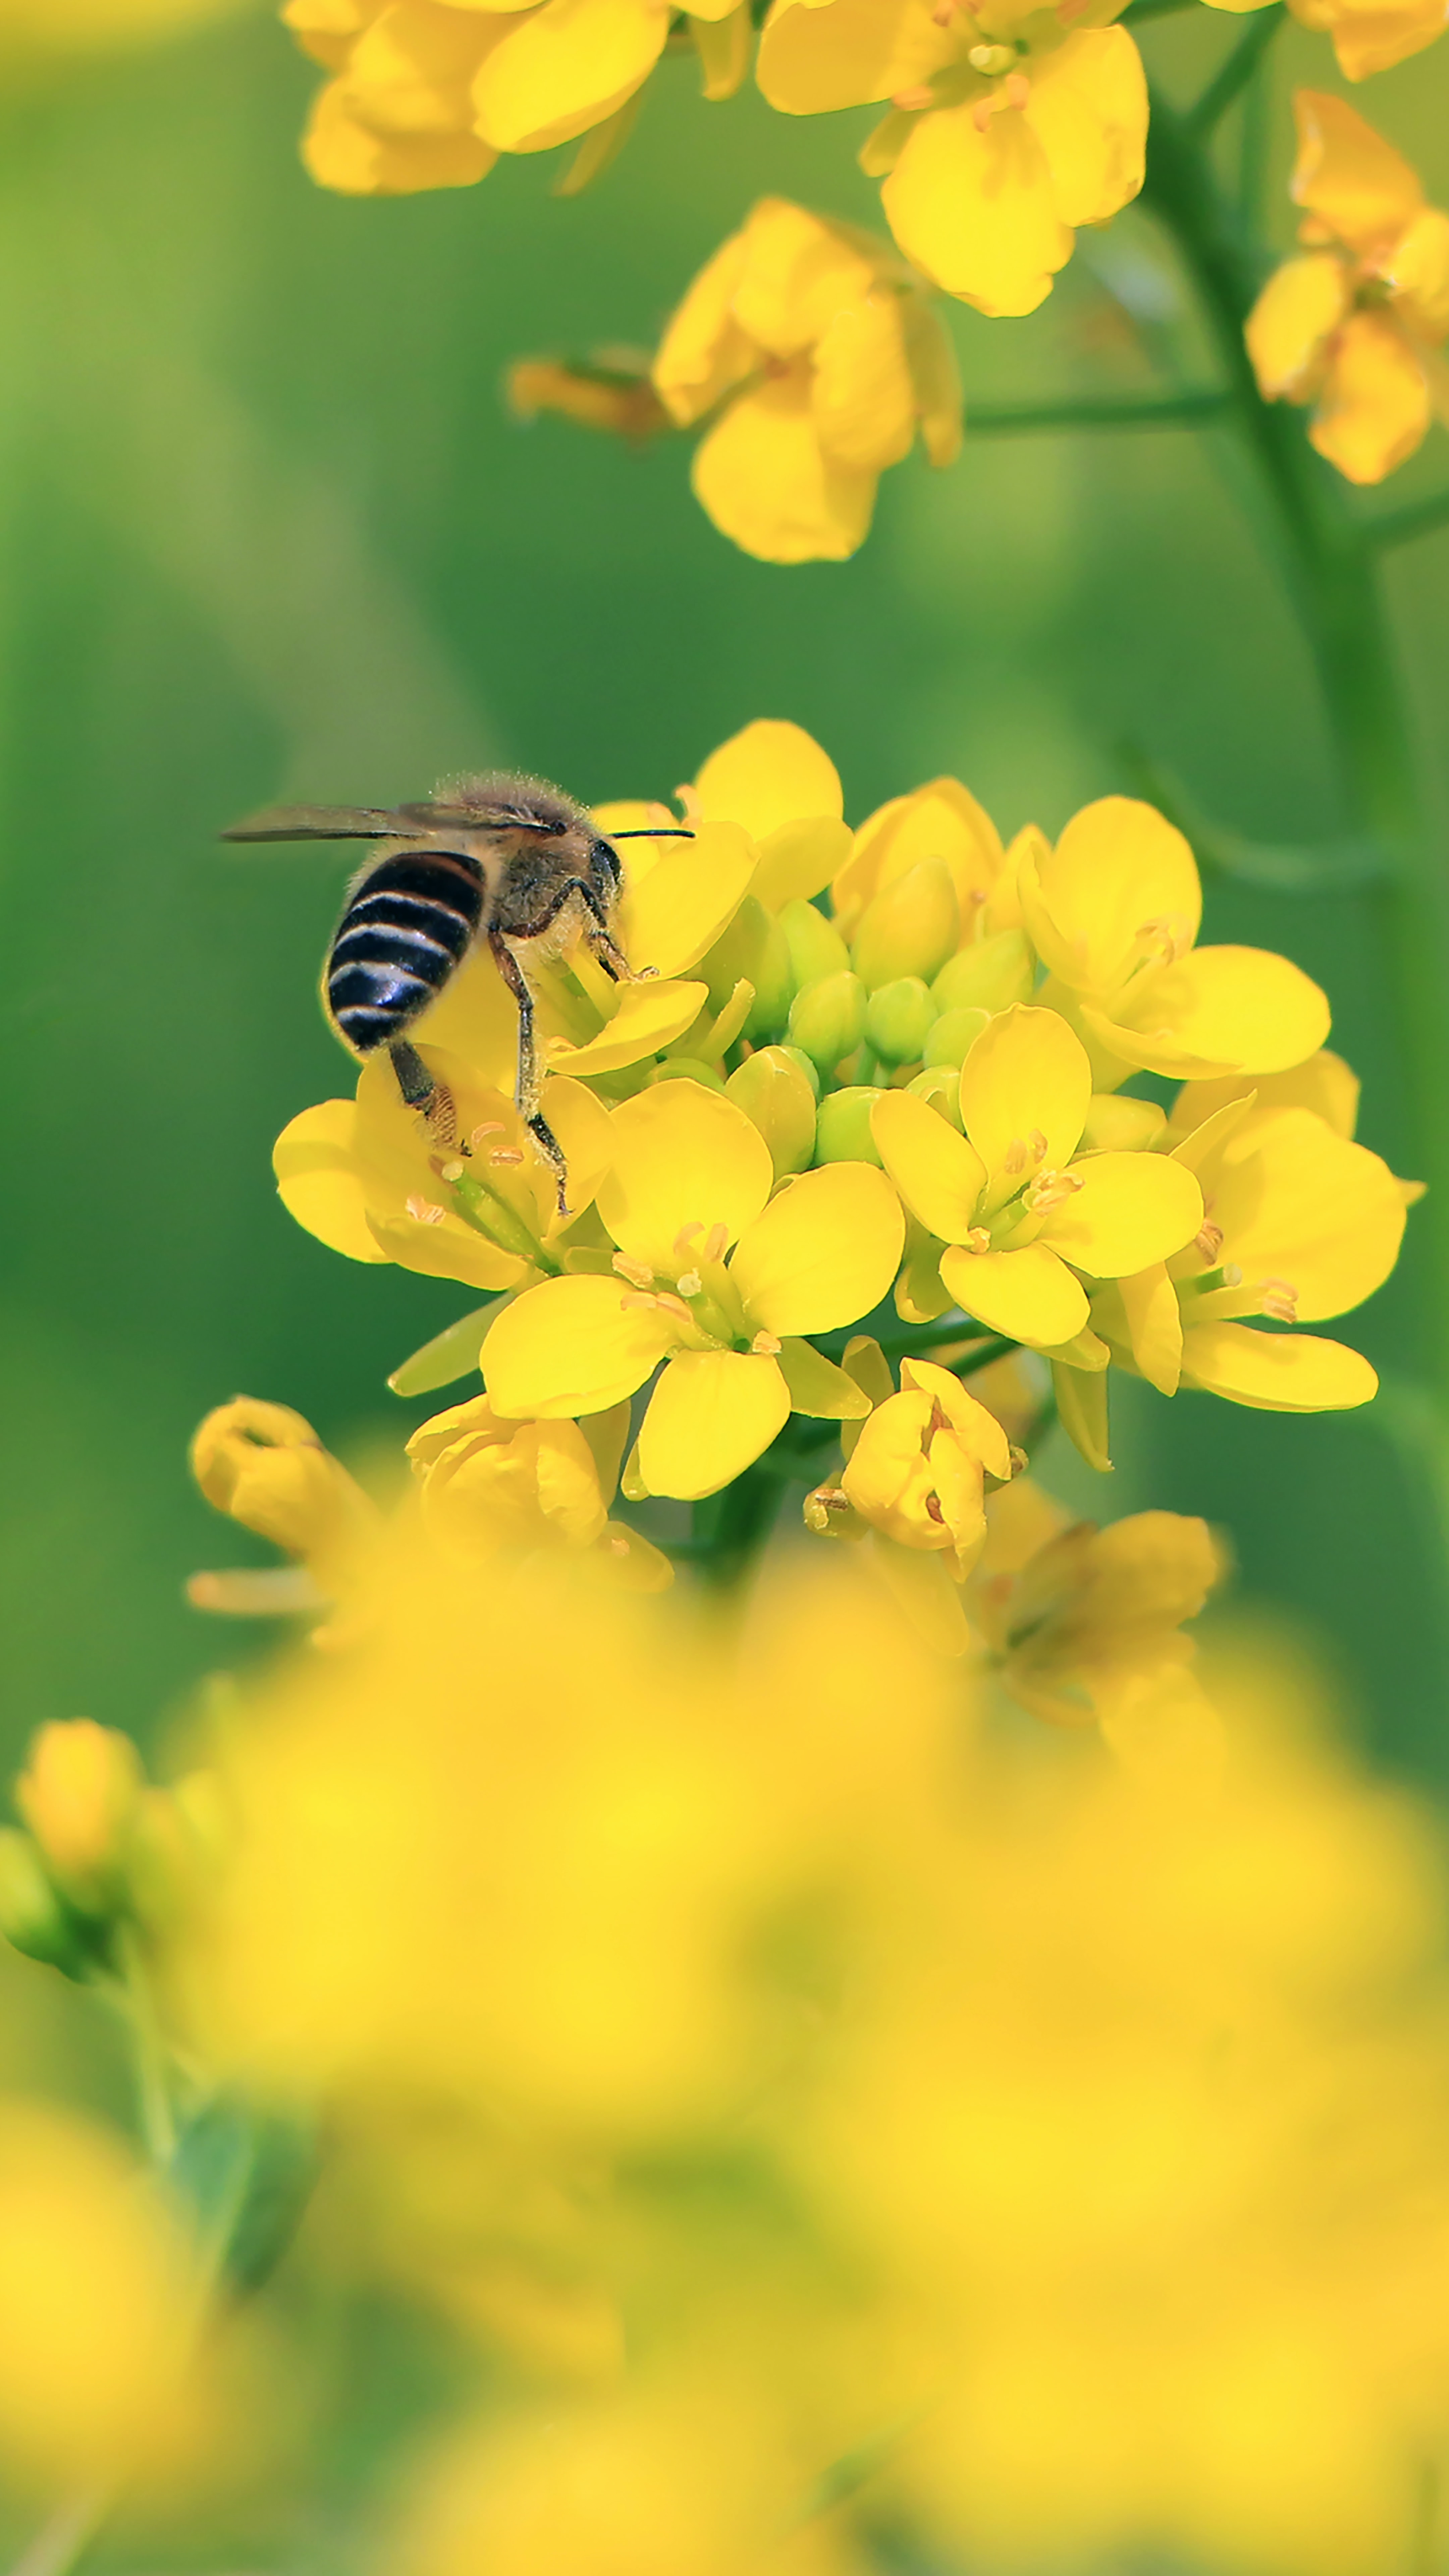 Скачать картинку Пчела, Крылья, Макро, Желтые Цветы, Цветы в телефон бесплатно.